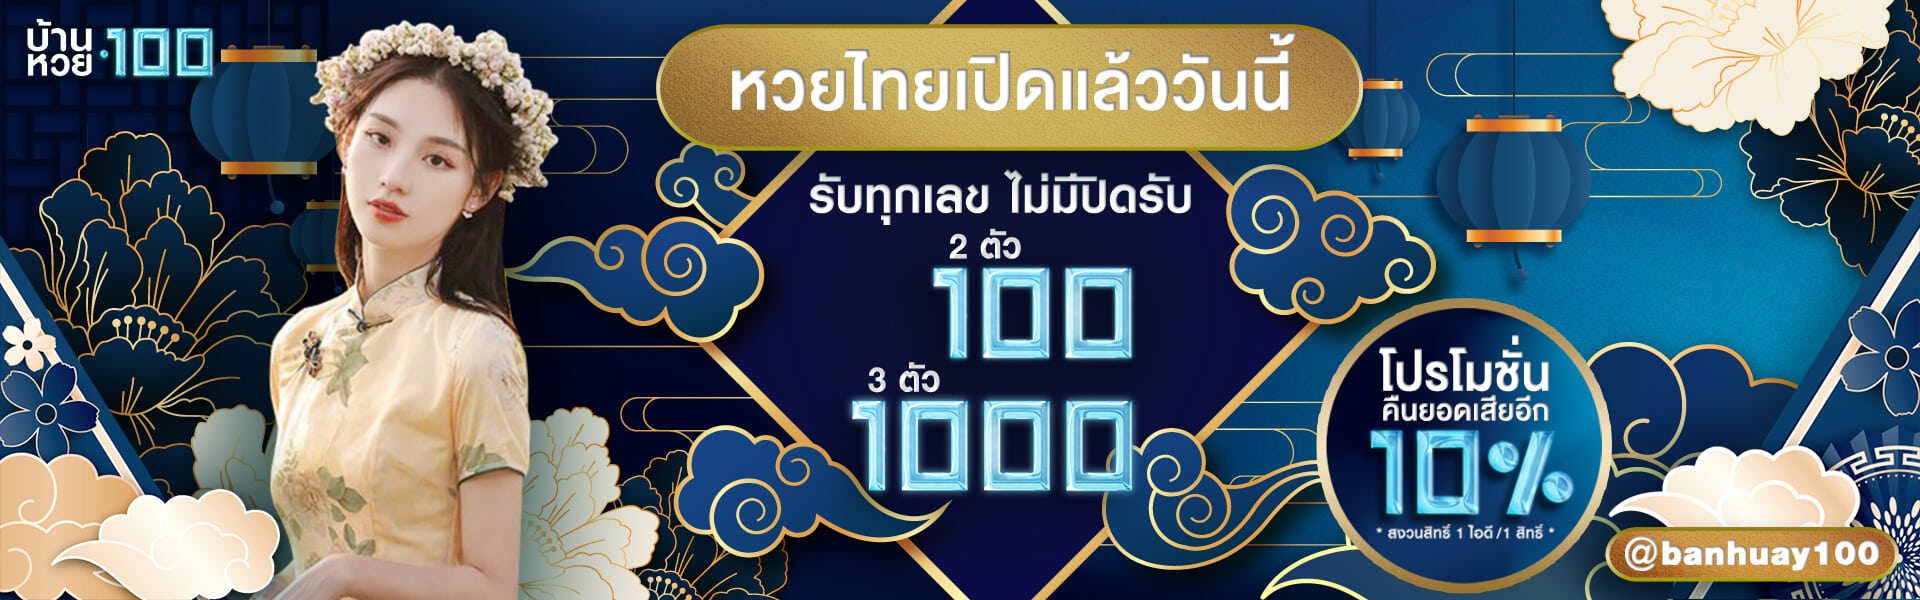 ปกหวยไทยเปิดรับ-บ้านหวย100